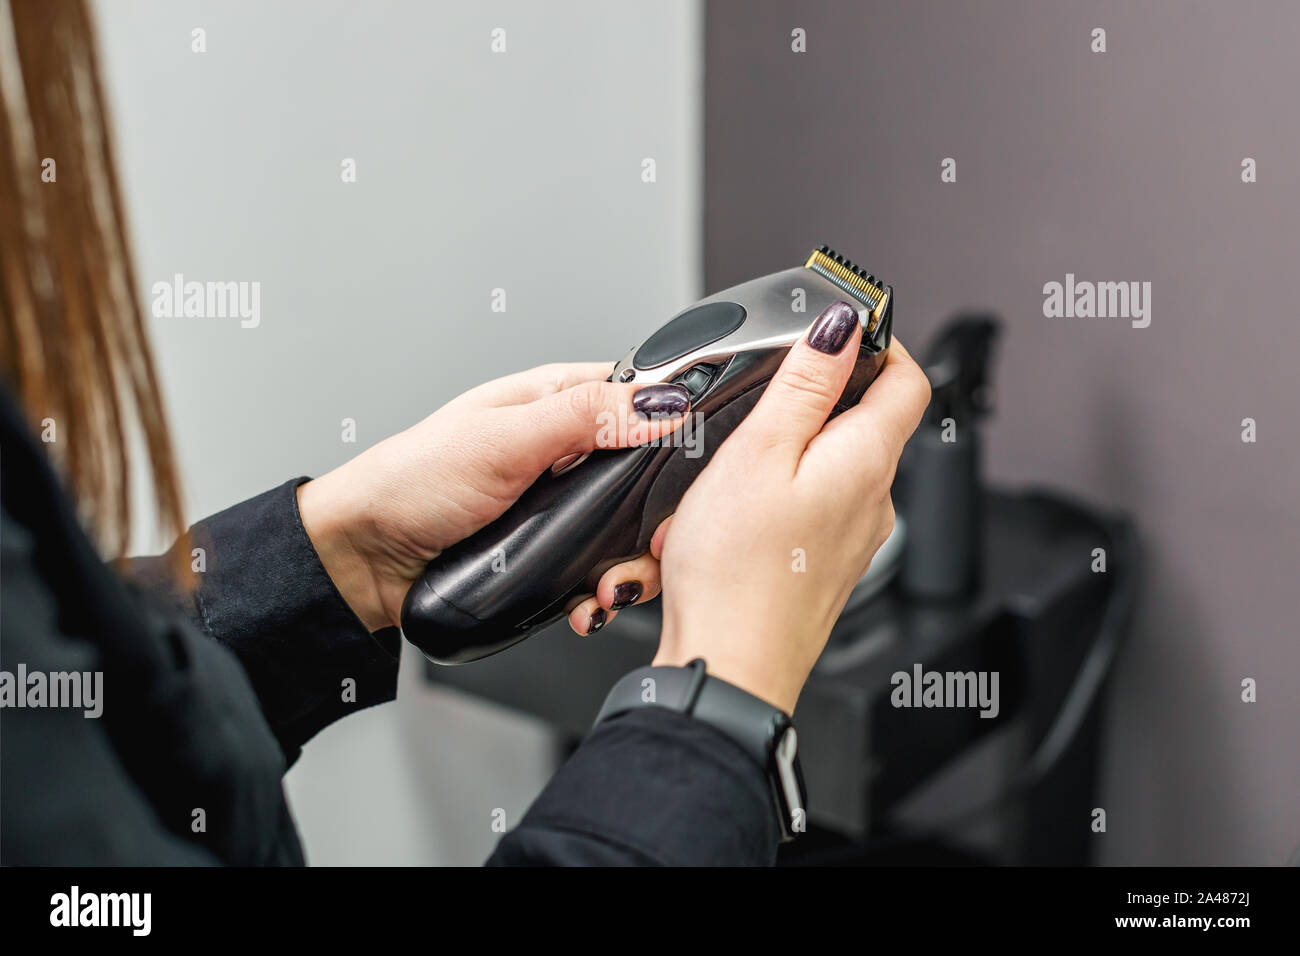 Bartschneider Maschine für Frisuren in die Hände der Friseur. Woman's Hand  hält einen Haarschneider Maschine auf dem Hintergrund der Friseur  Stockfotografie - Alamy